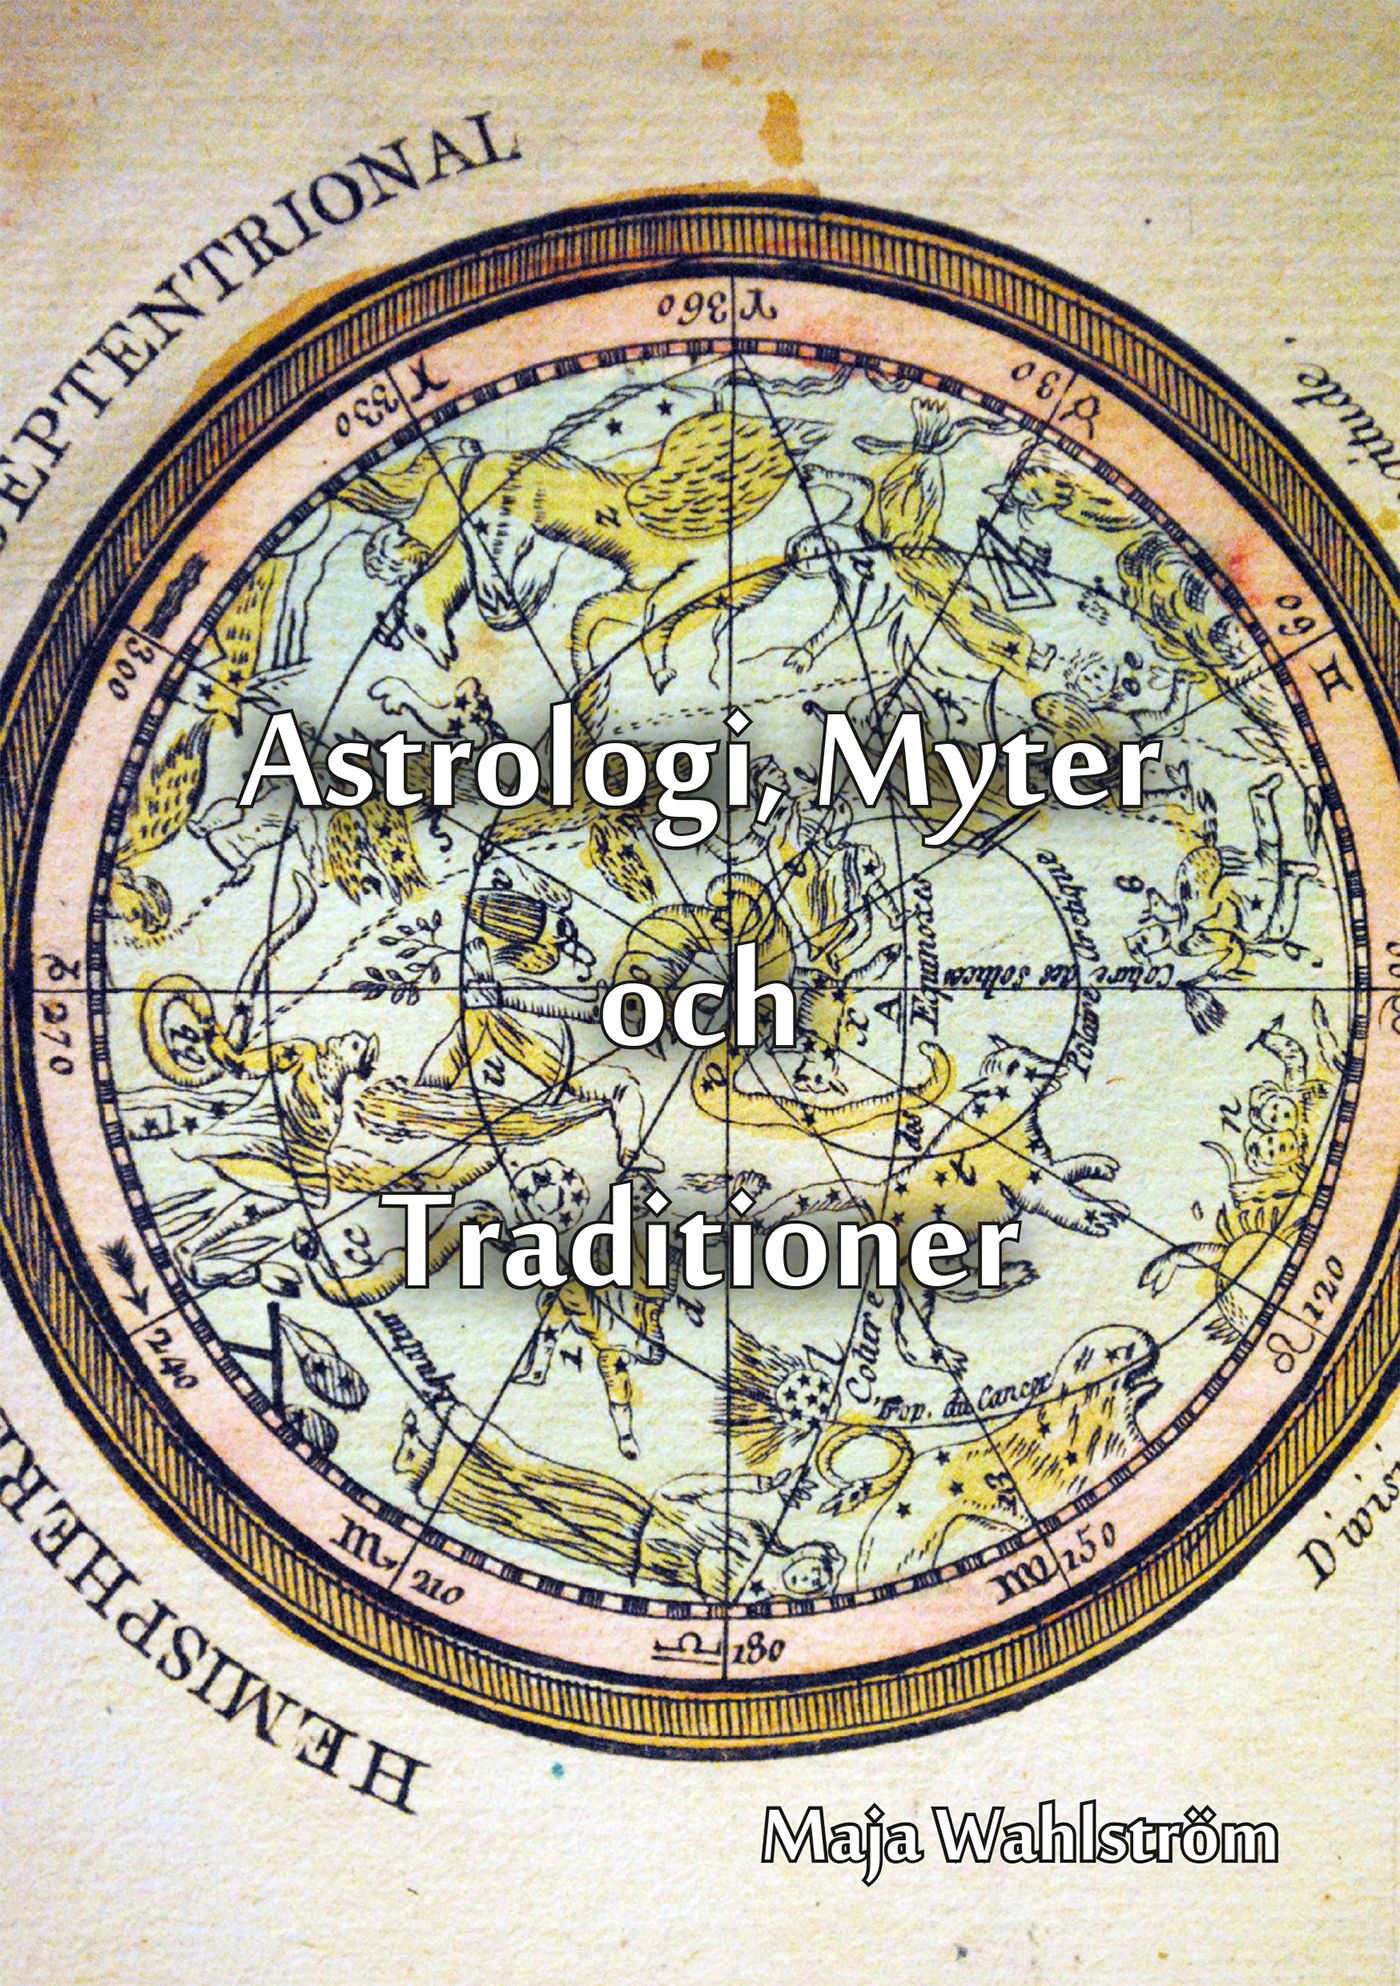 Astrologi, Myter och Traditioner, eBook by Maja Wahlström